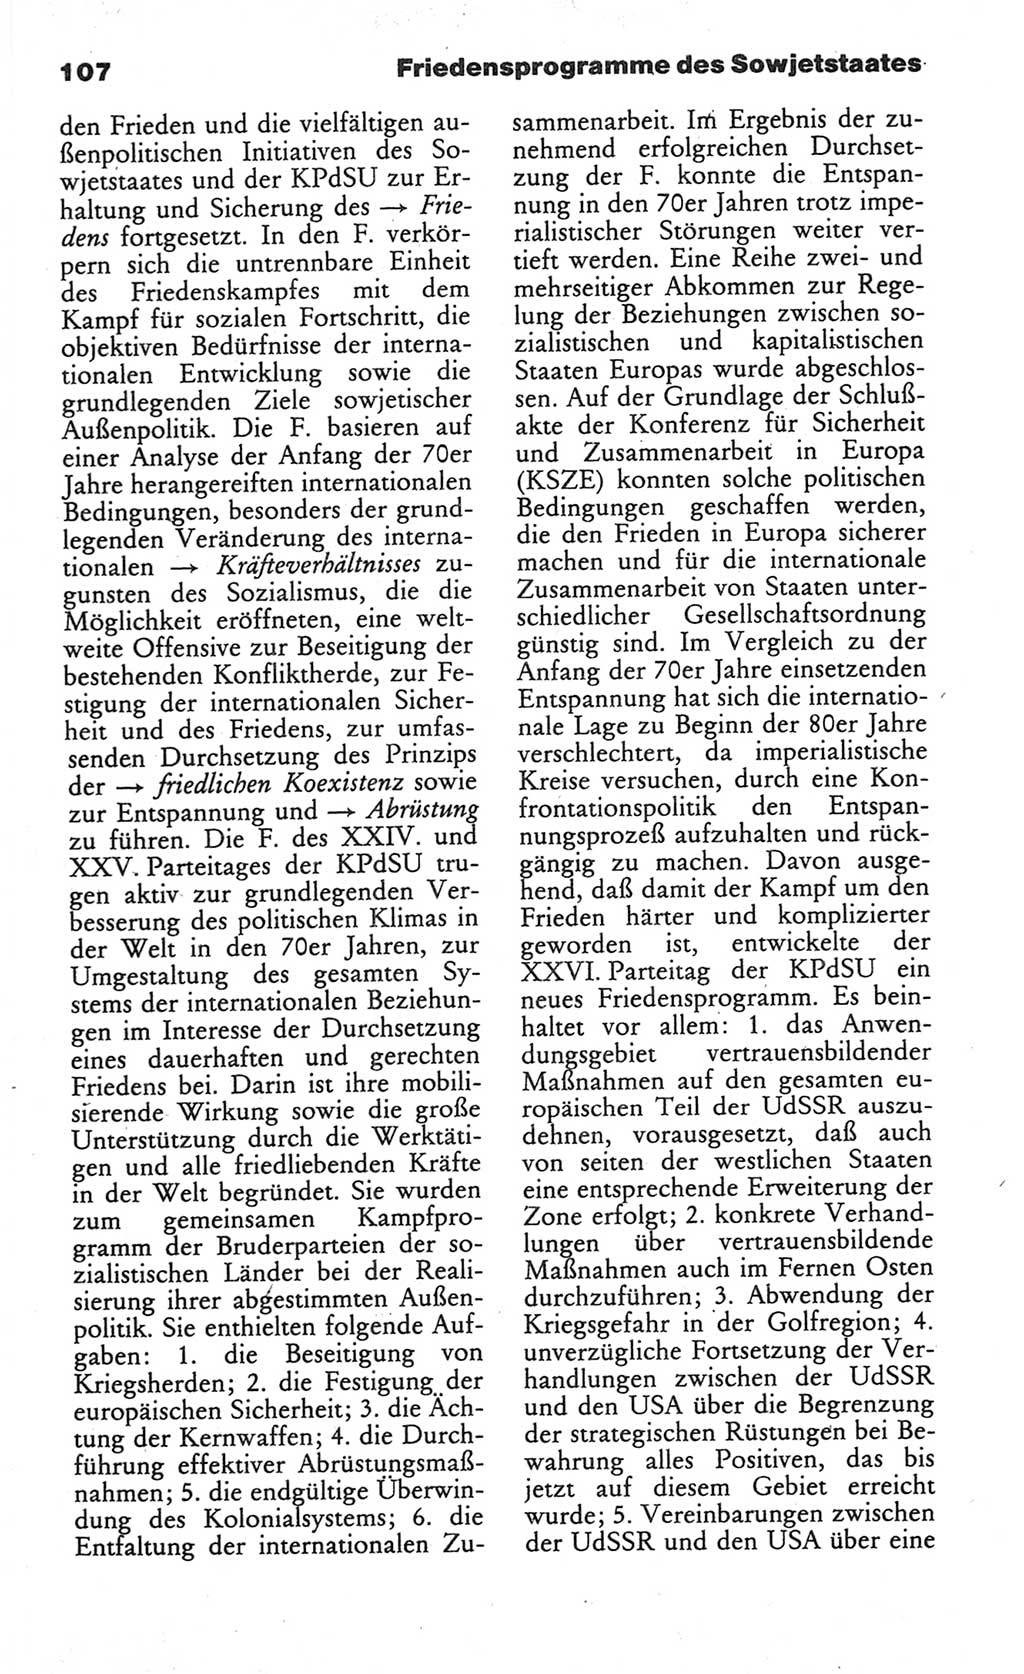 Wörterbuch des wissenschaftlichen Kommunismus [Deutsche Demokratische Republik (DDR)] 1984, Seite 107 (Wb. wiss. Komm. DDR 1984, S. 107)